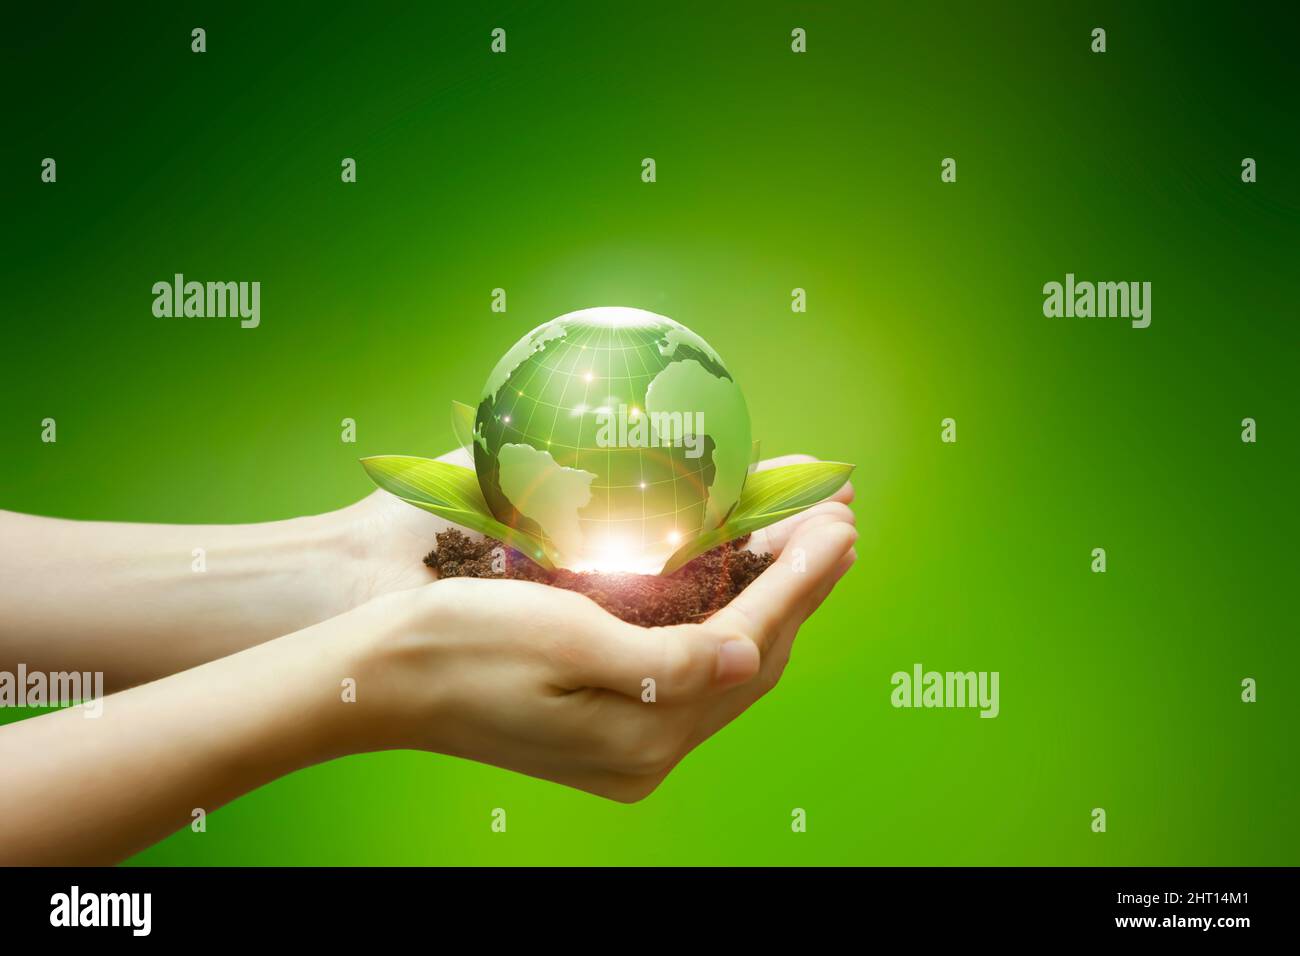 Il terreno, le foglie e il globo verde che si trova nel palmo della mano simboleggiano l'industria energetica ecocompatibile. Foto Stock